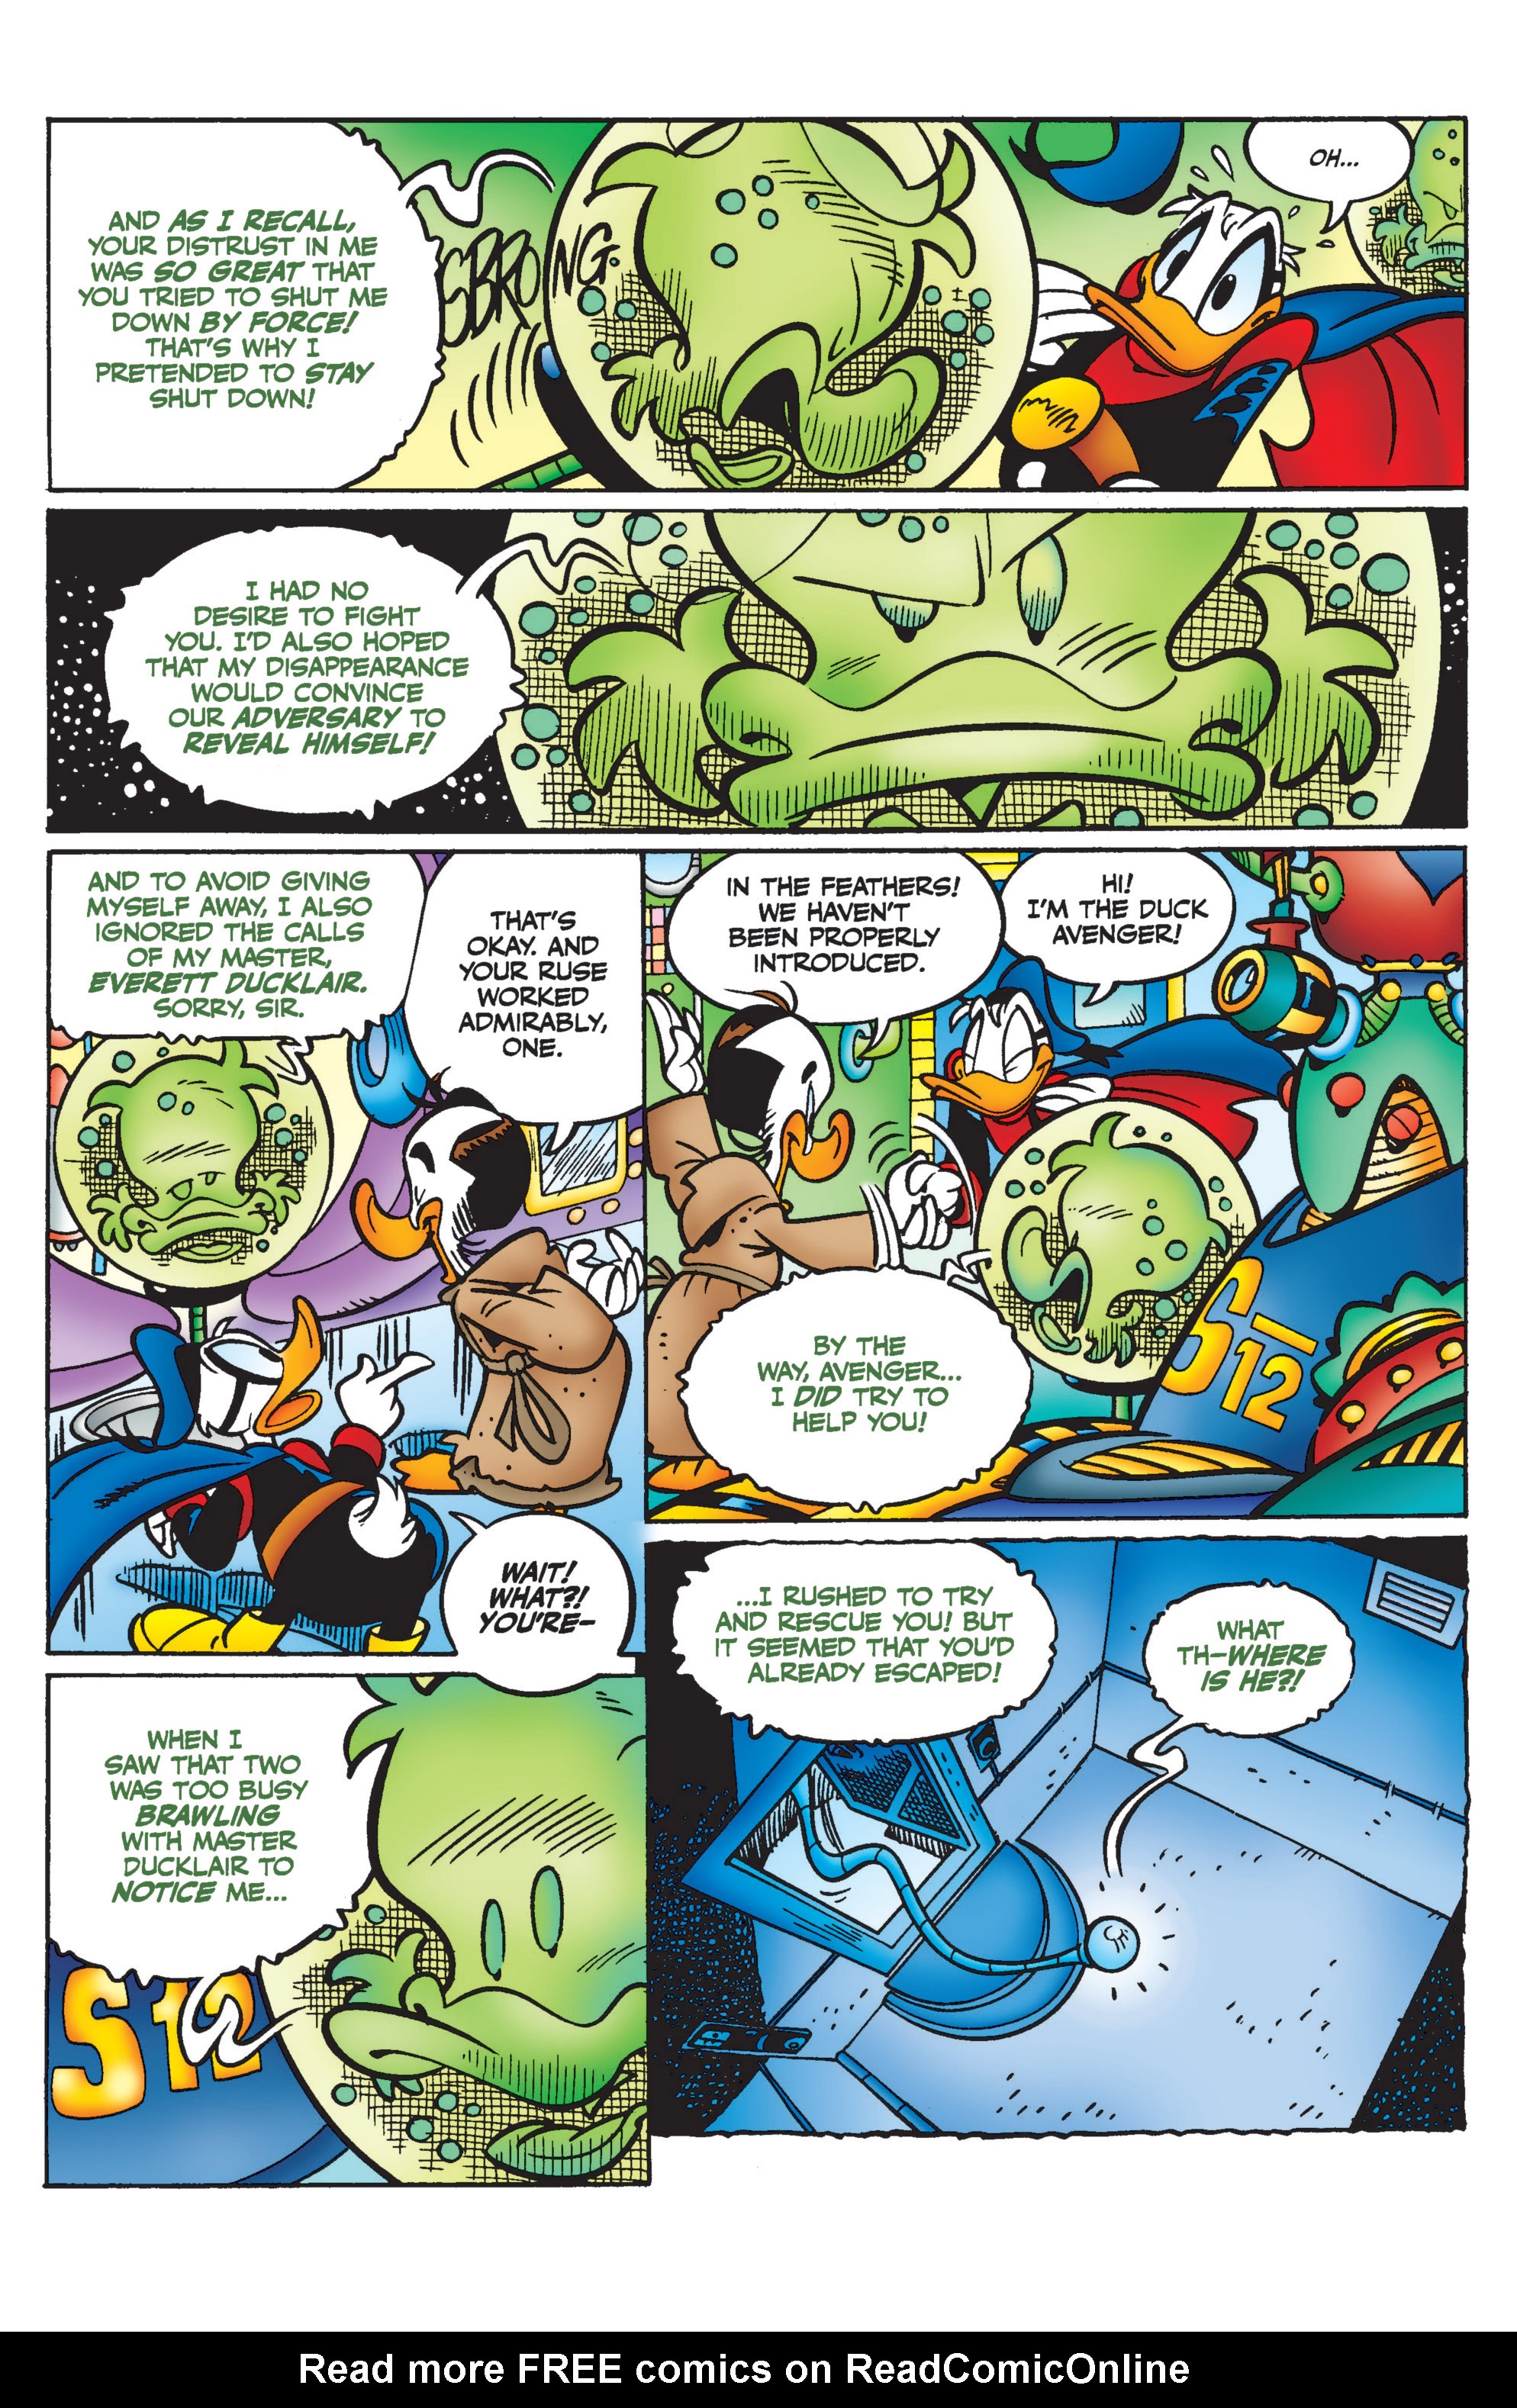 Read online Duck Avenger comic -  Issue #4 - 68